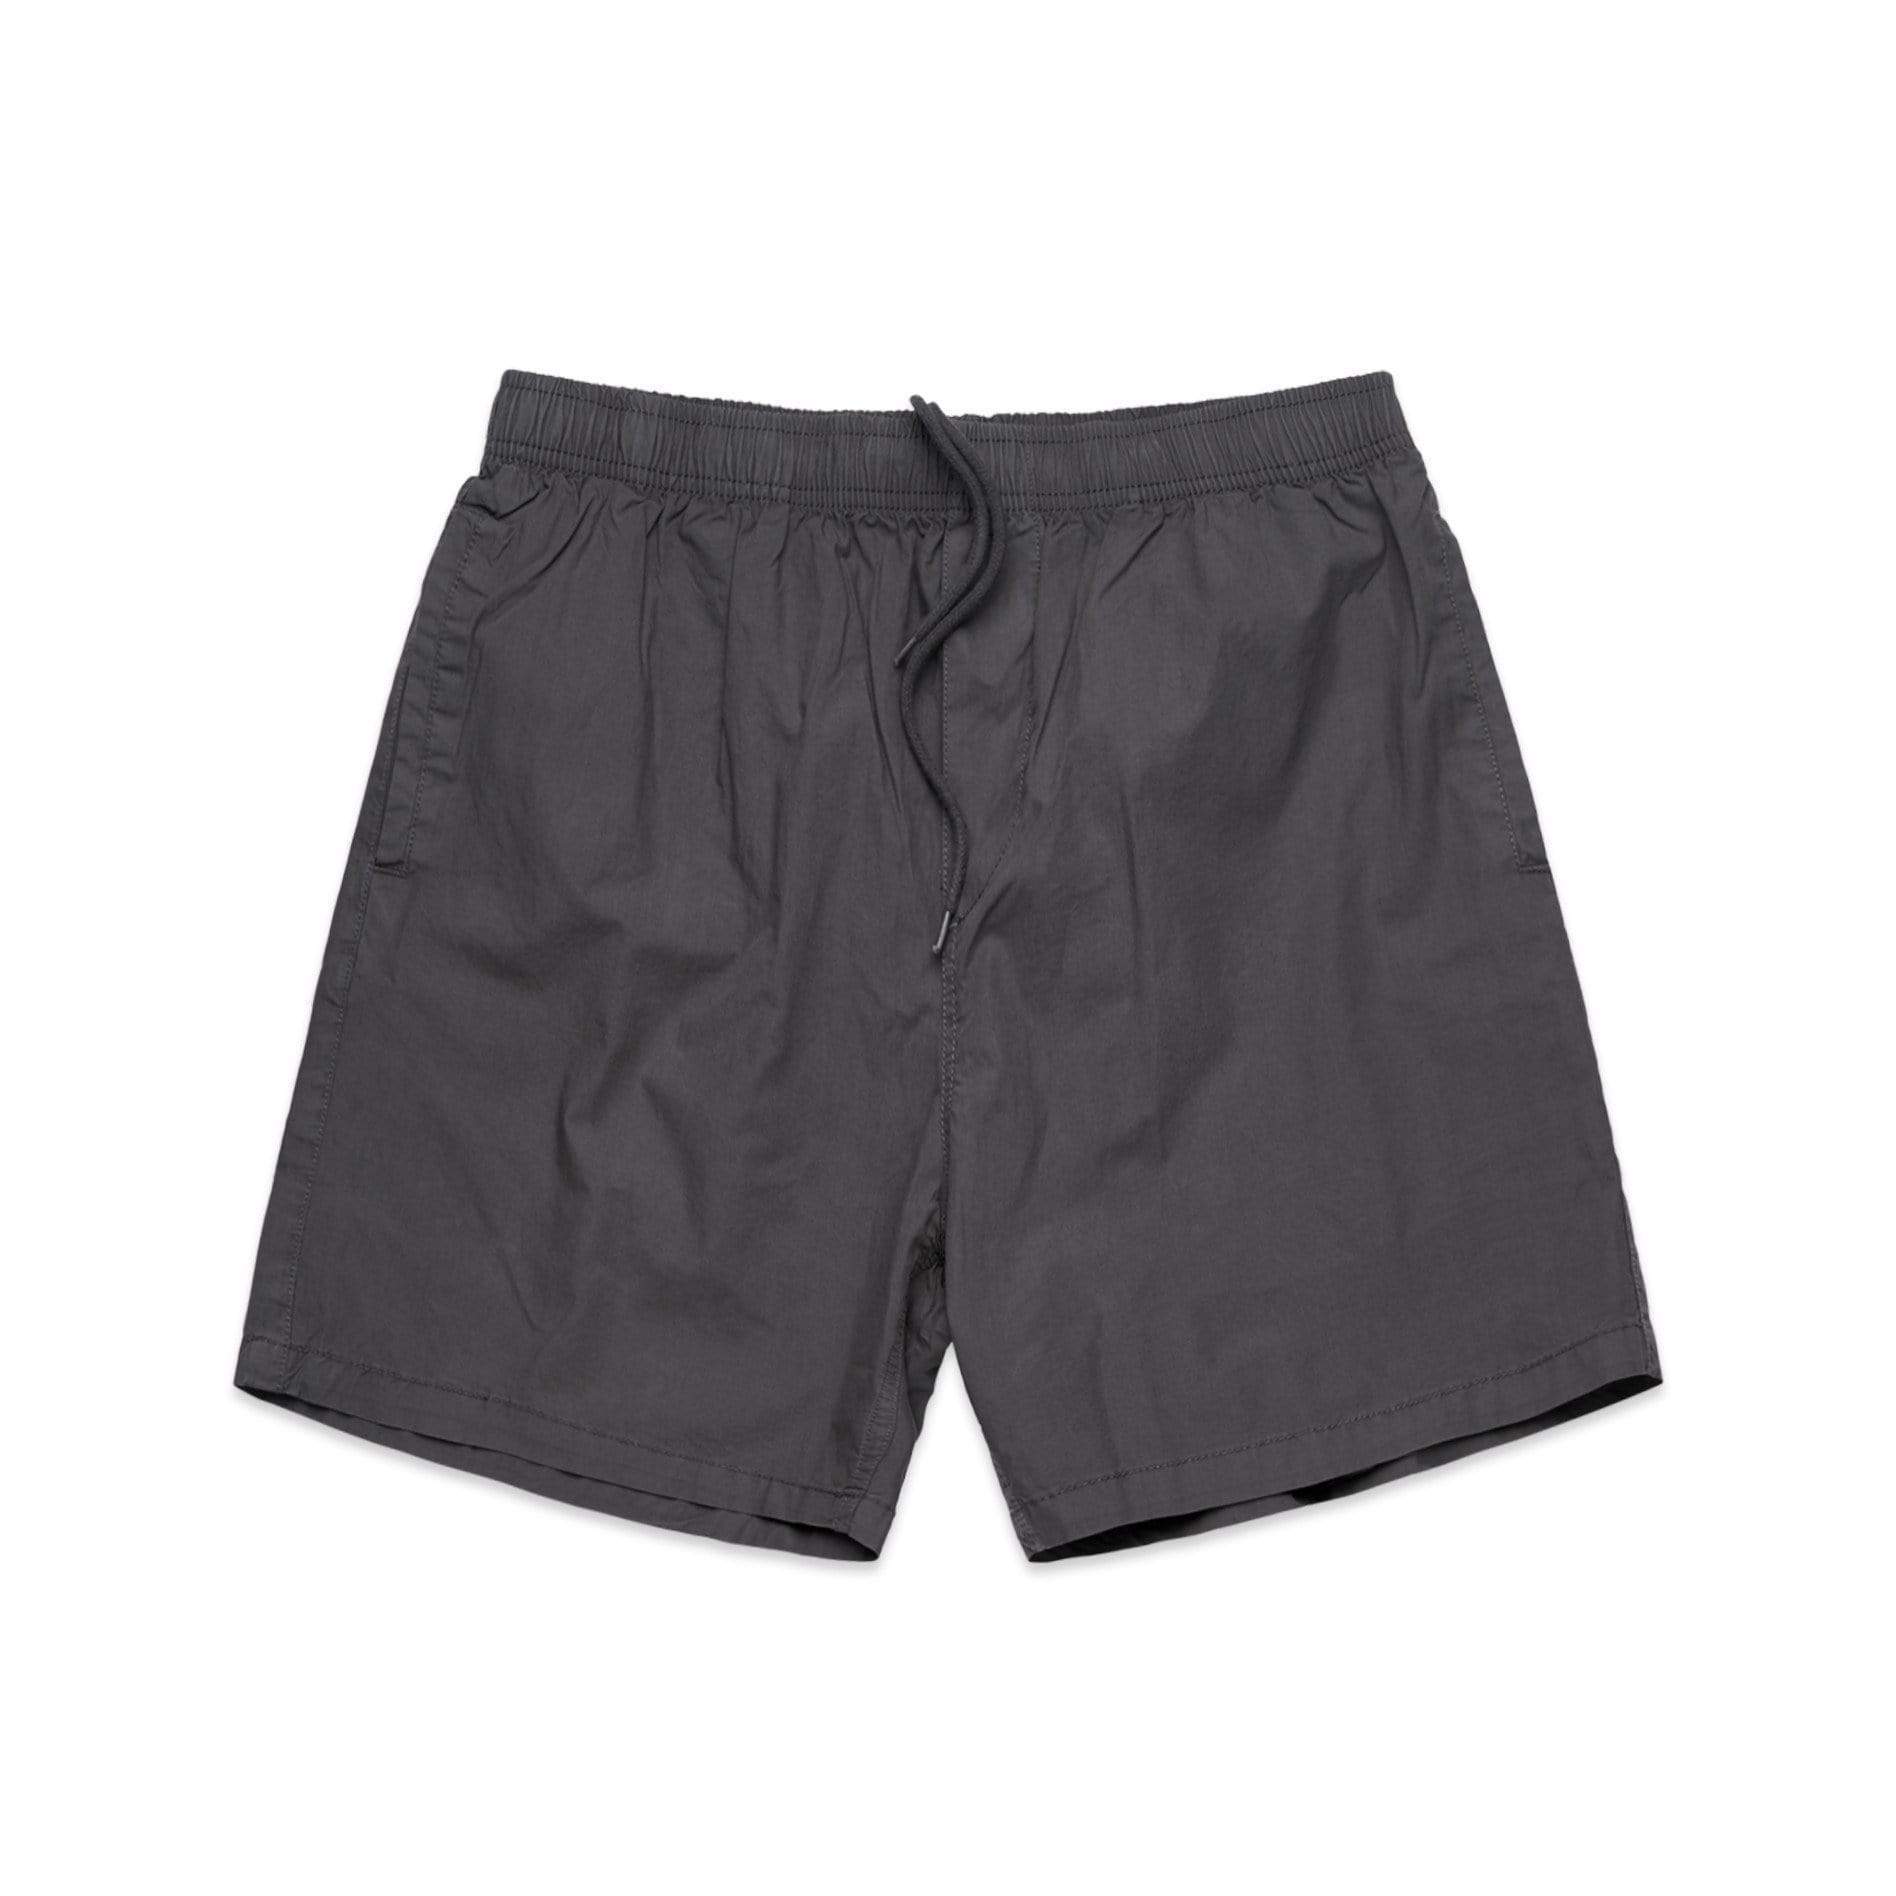 As Colour Active Wear GREY STONE / 30 As Colour Men's beach shorts 5903